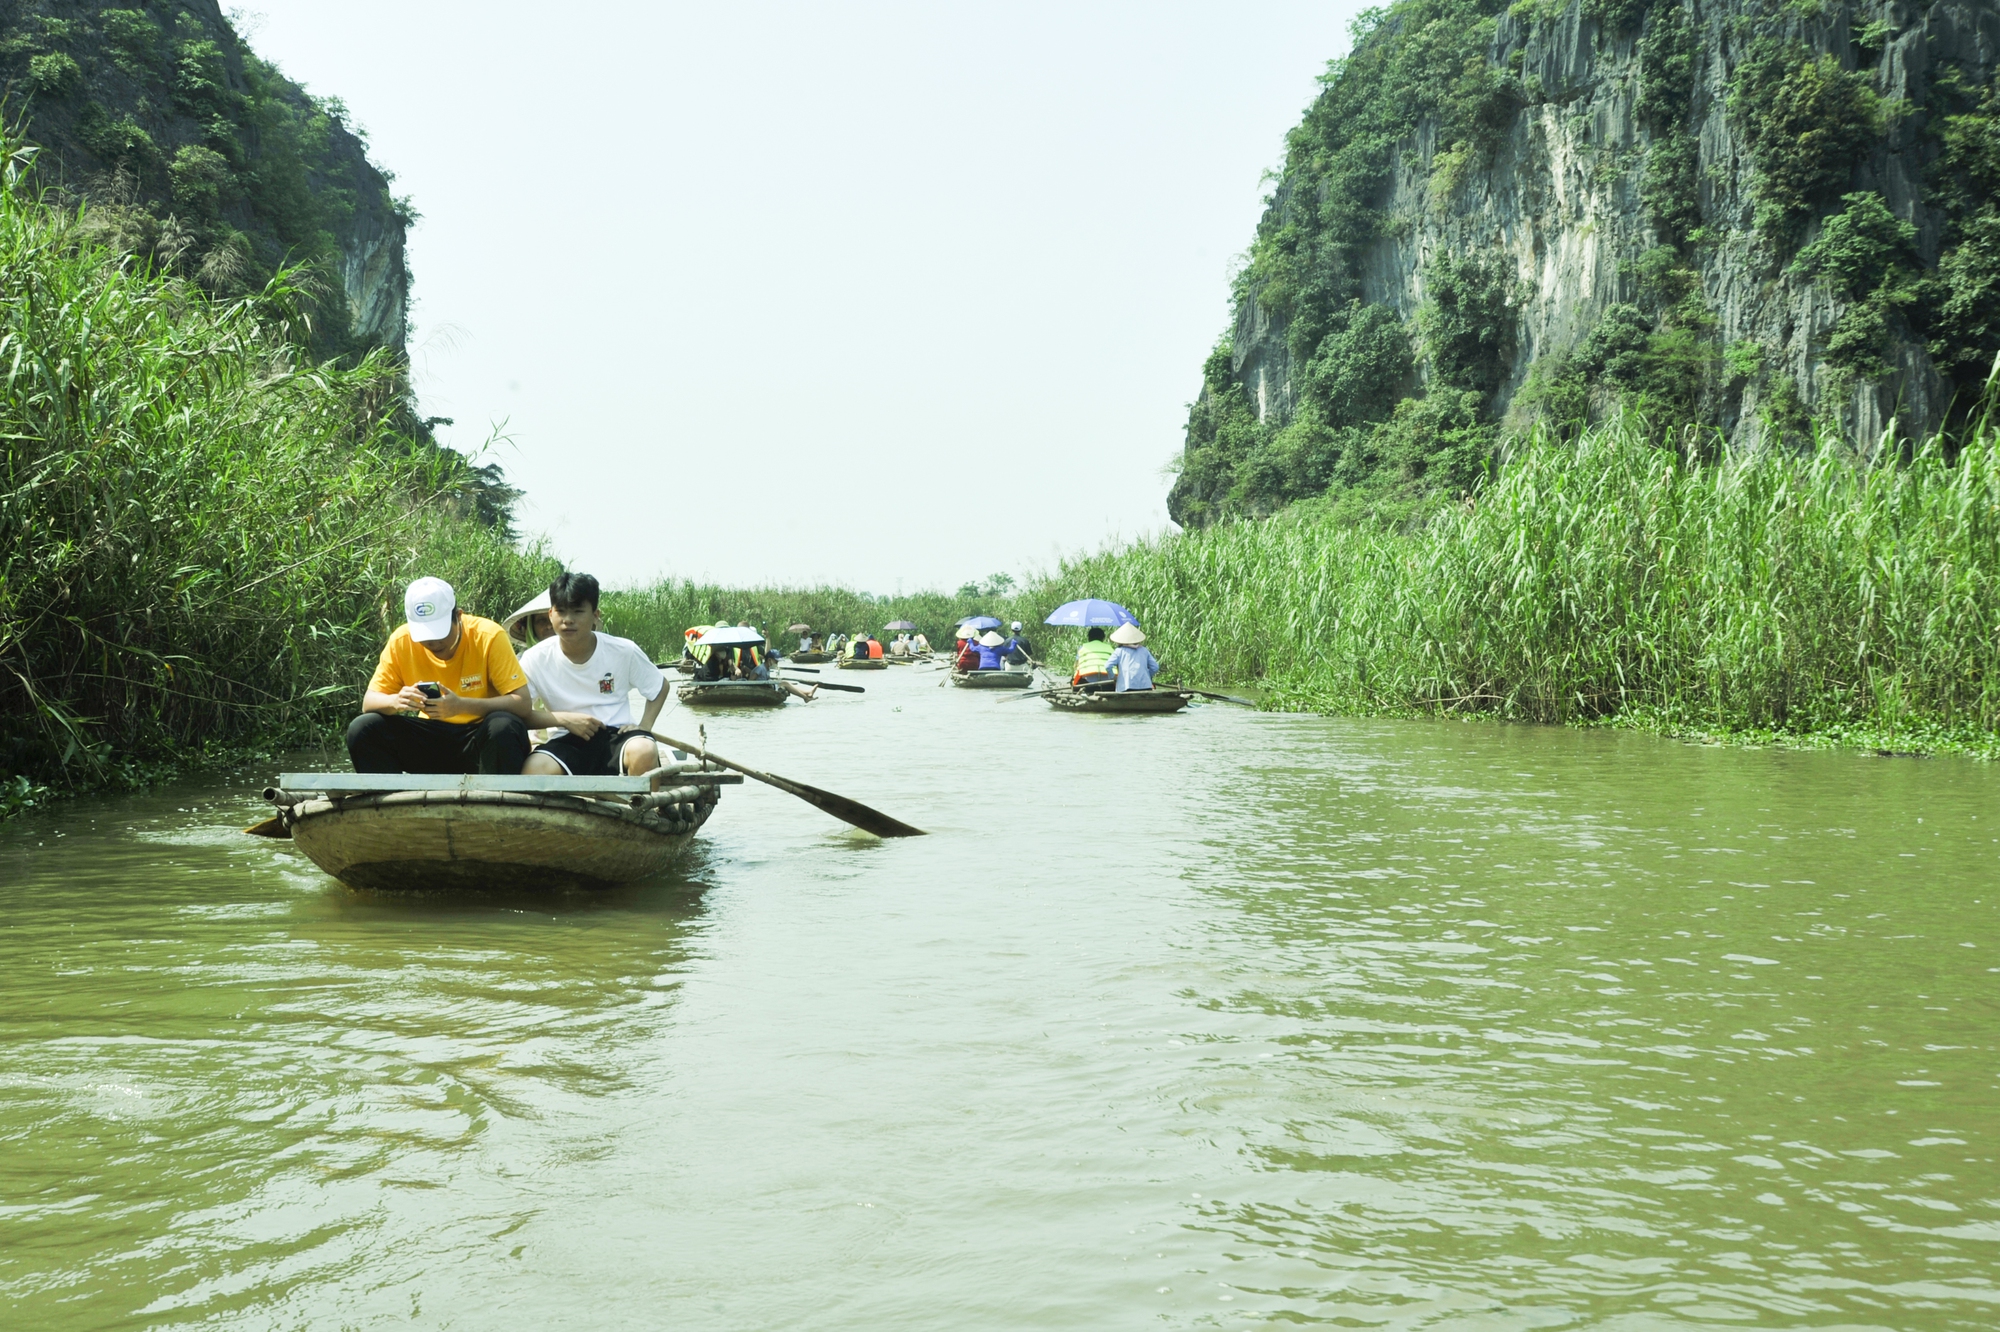 Khám phá đầm Vân Long - nơi quay bộ phim nổi tiếng Kong: Skull Island ở Ninh Bình - Ảnh 3.